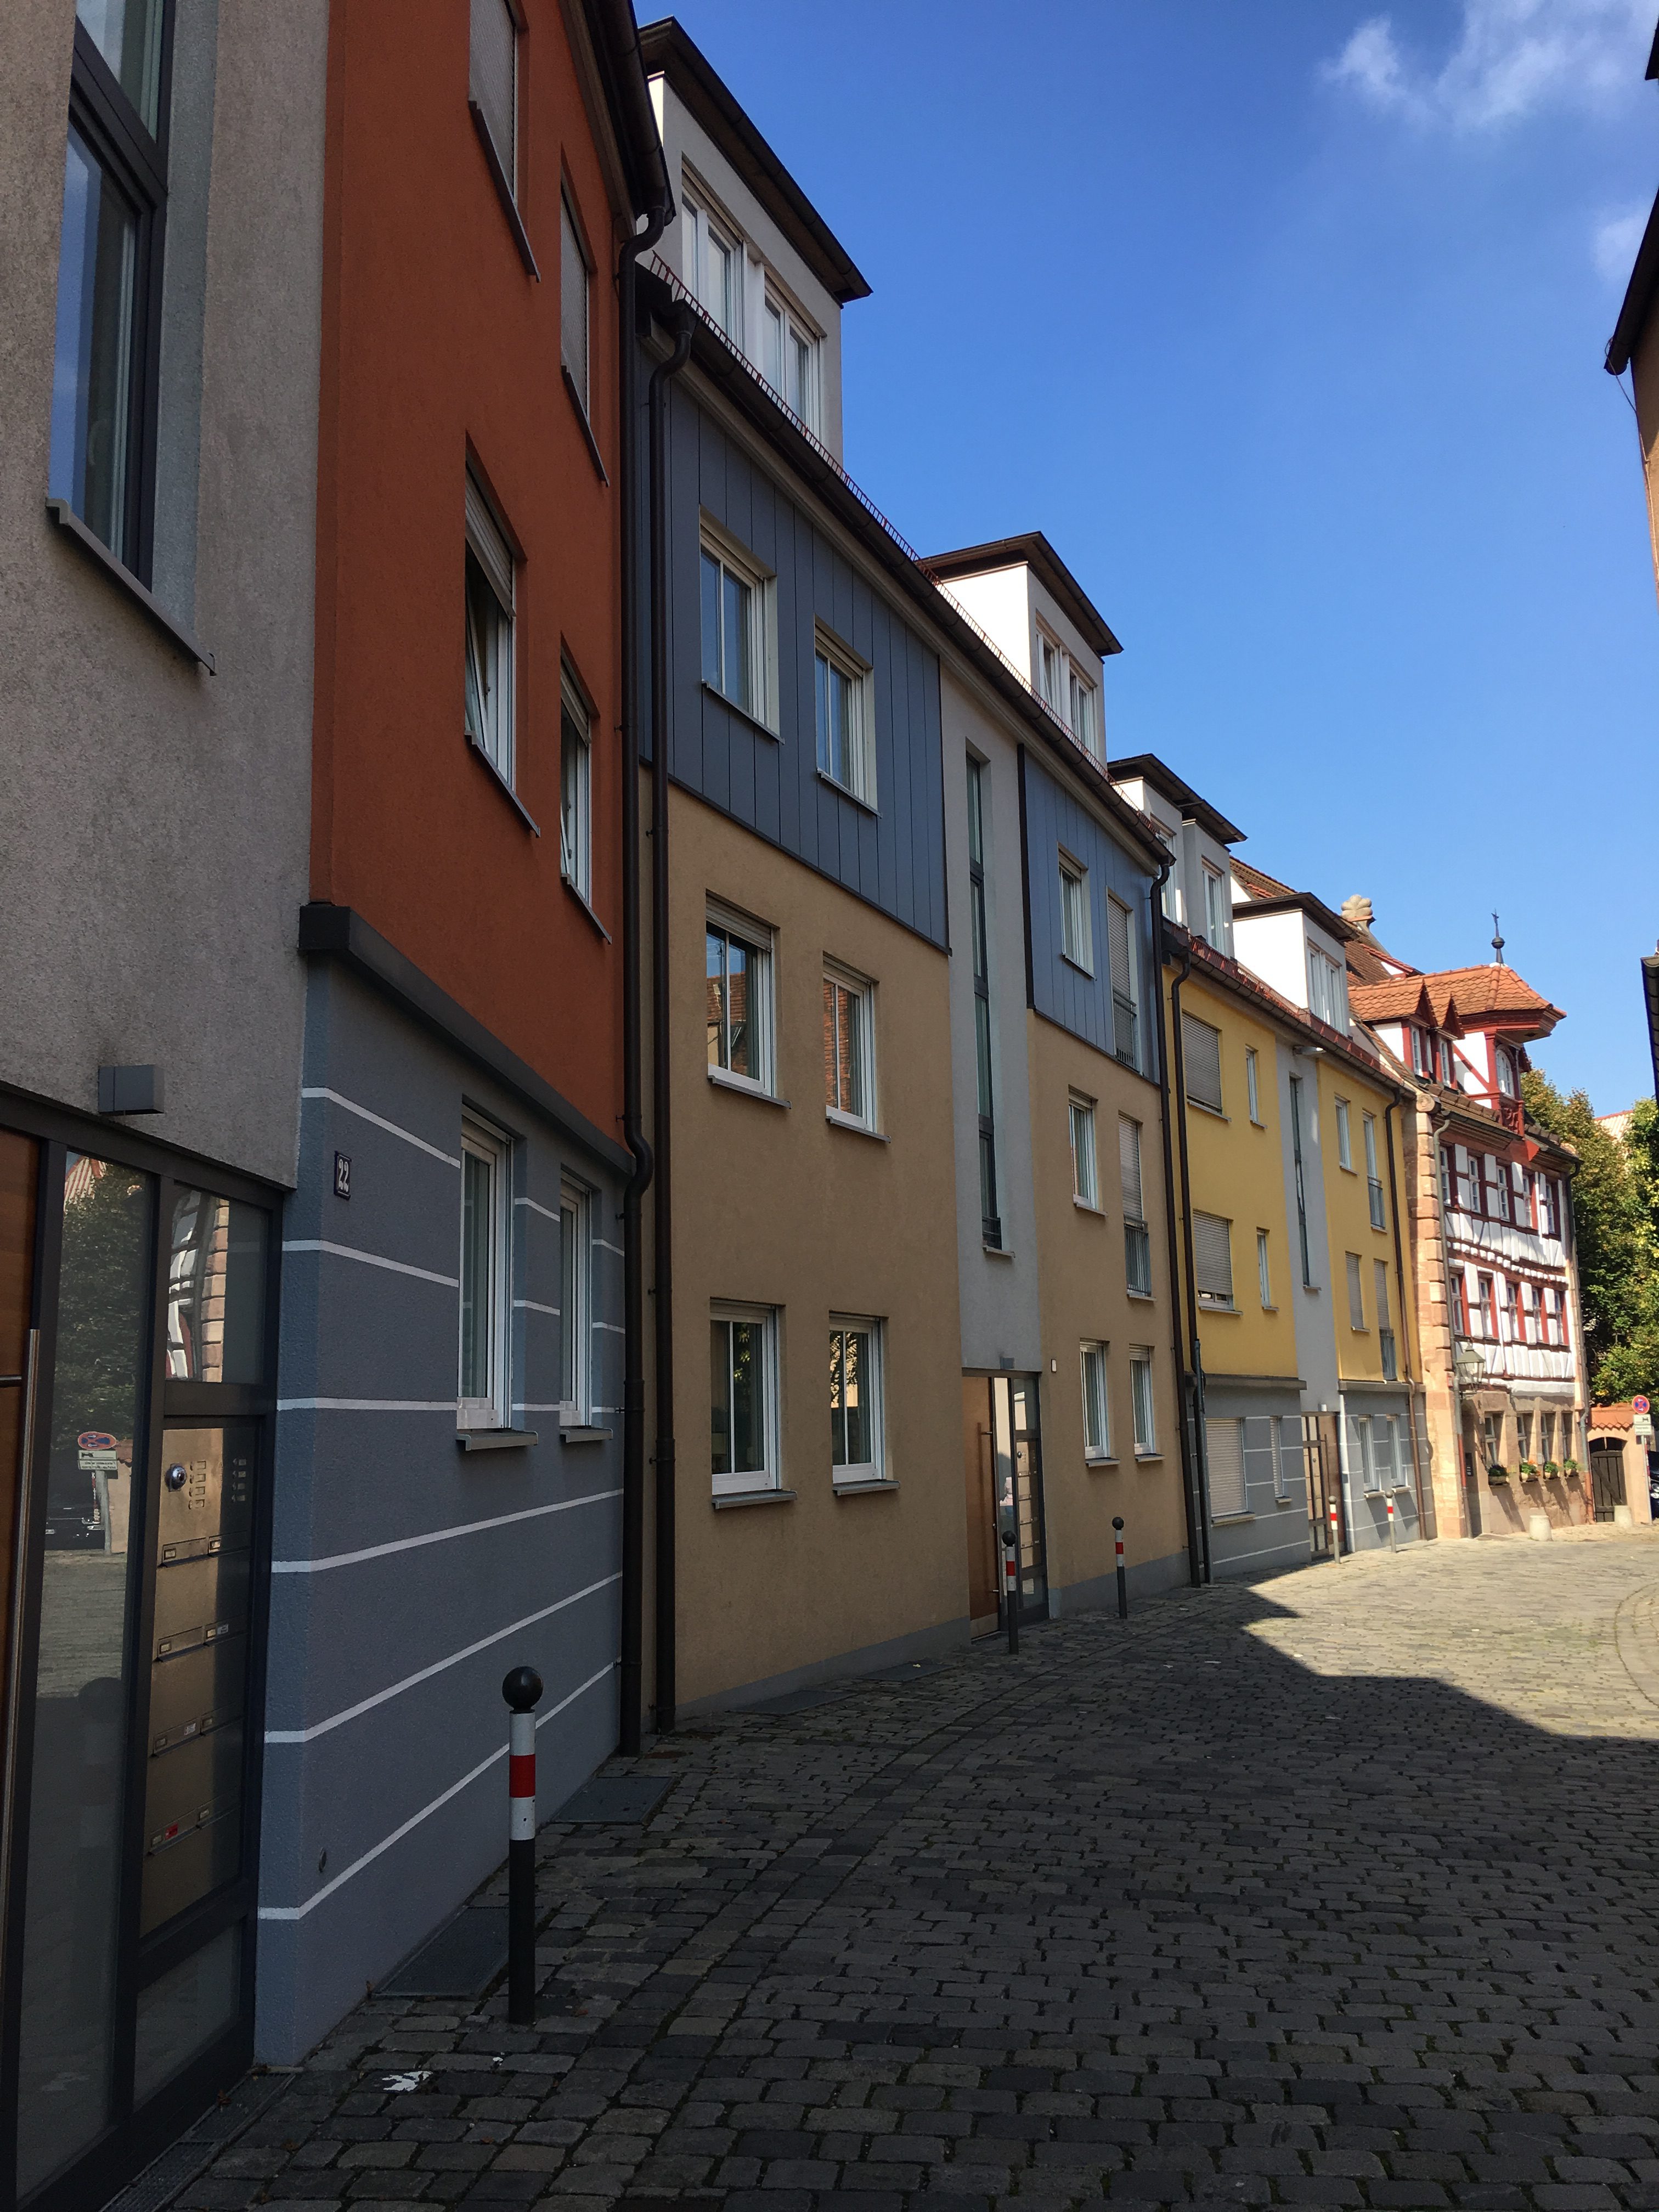 Colorful buildings in Nuremberg